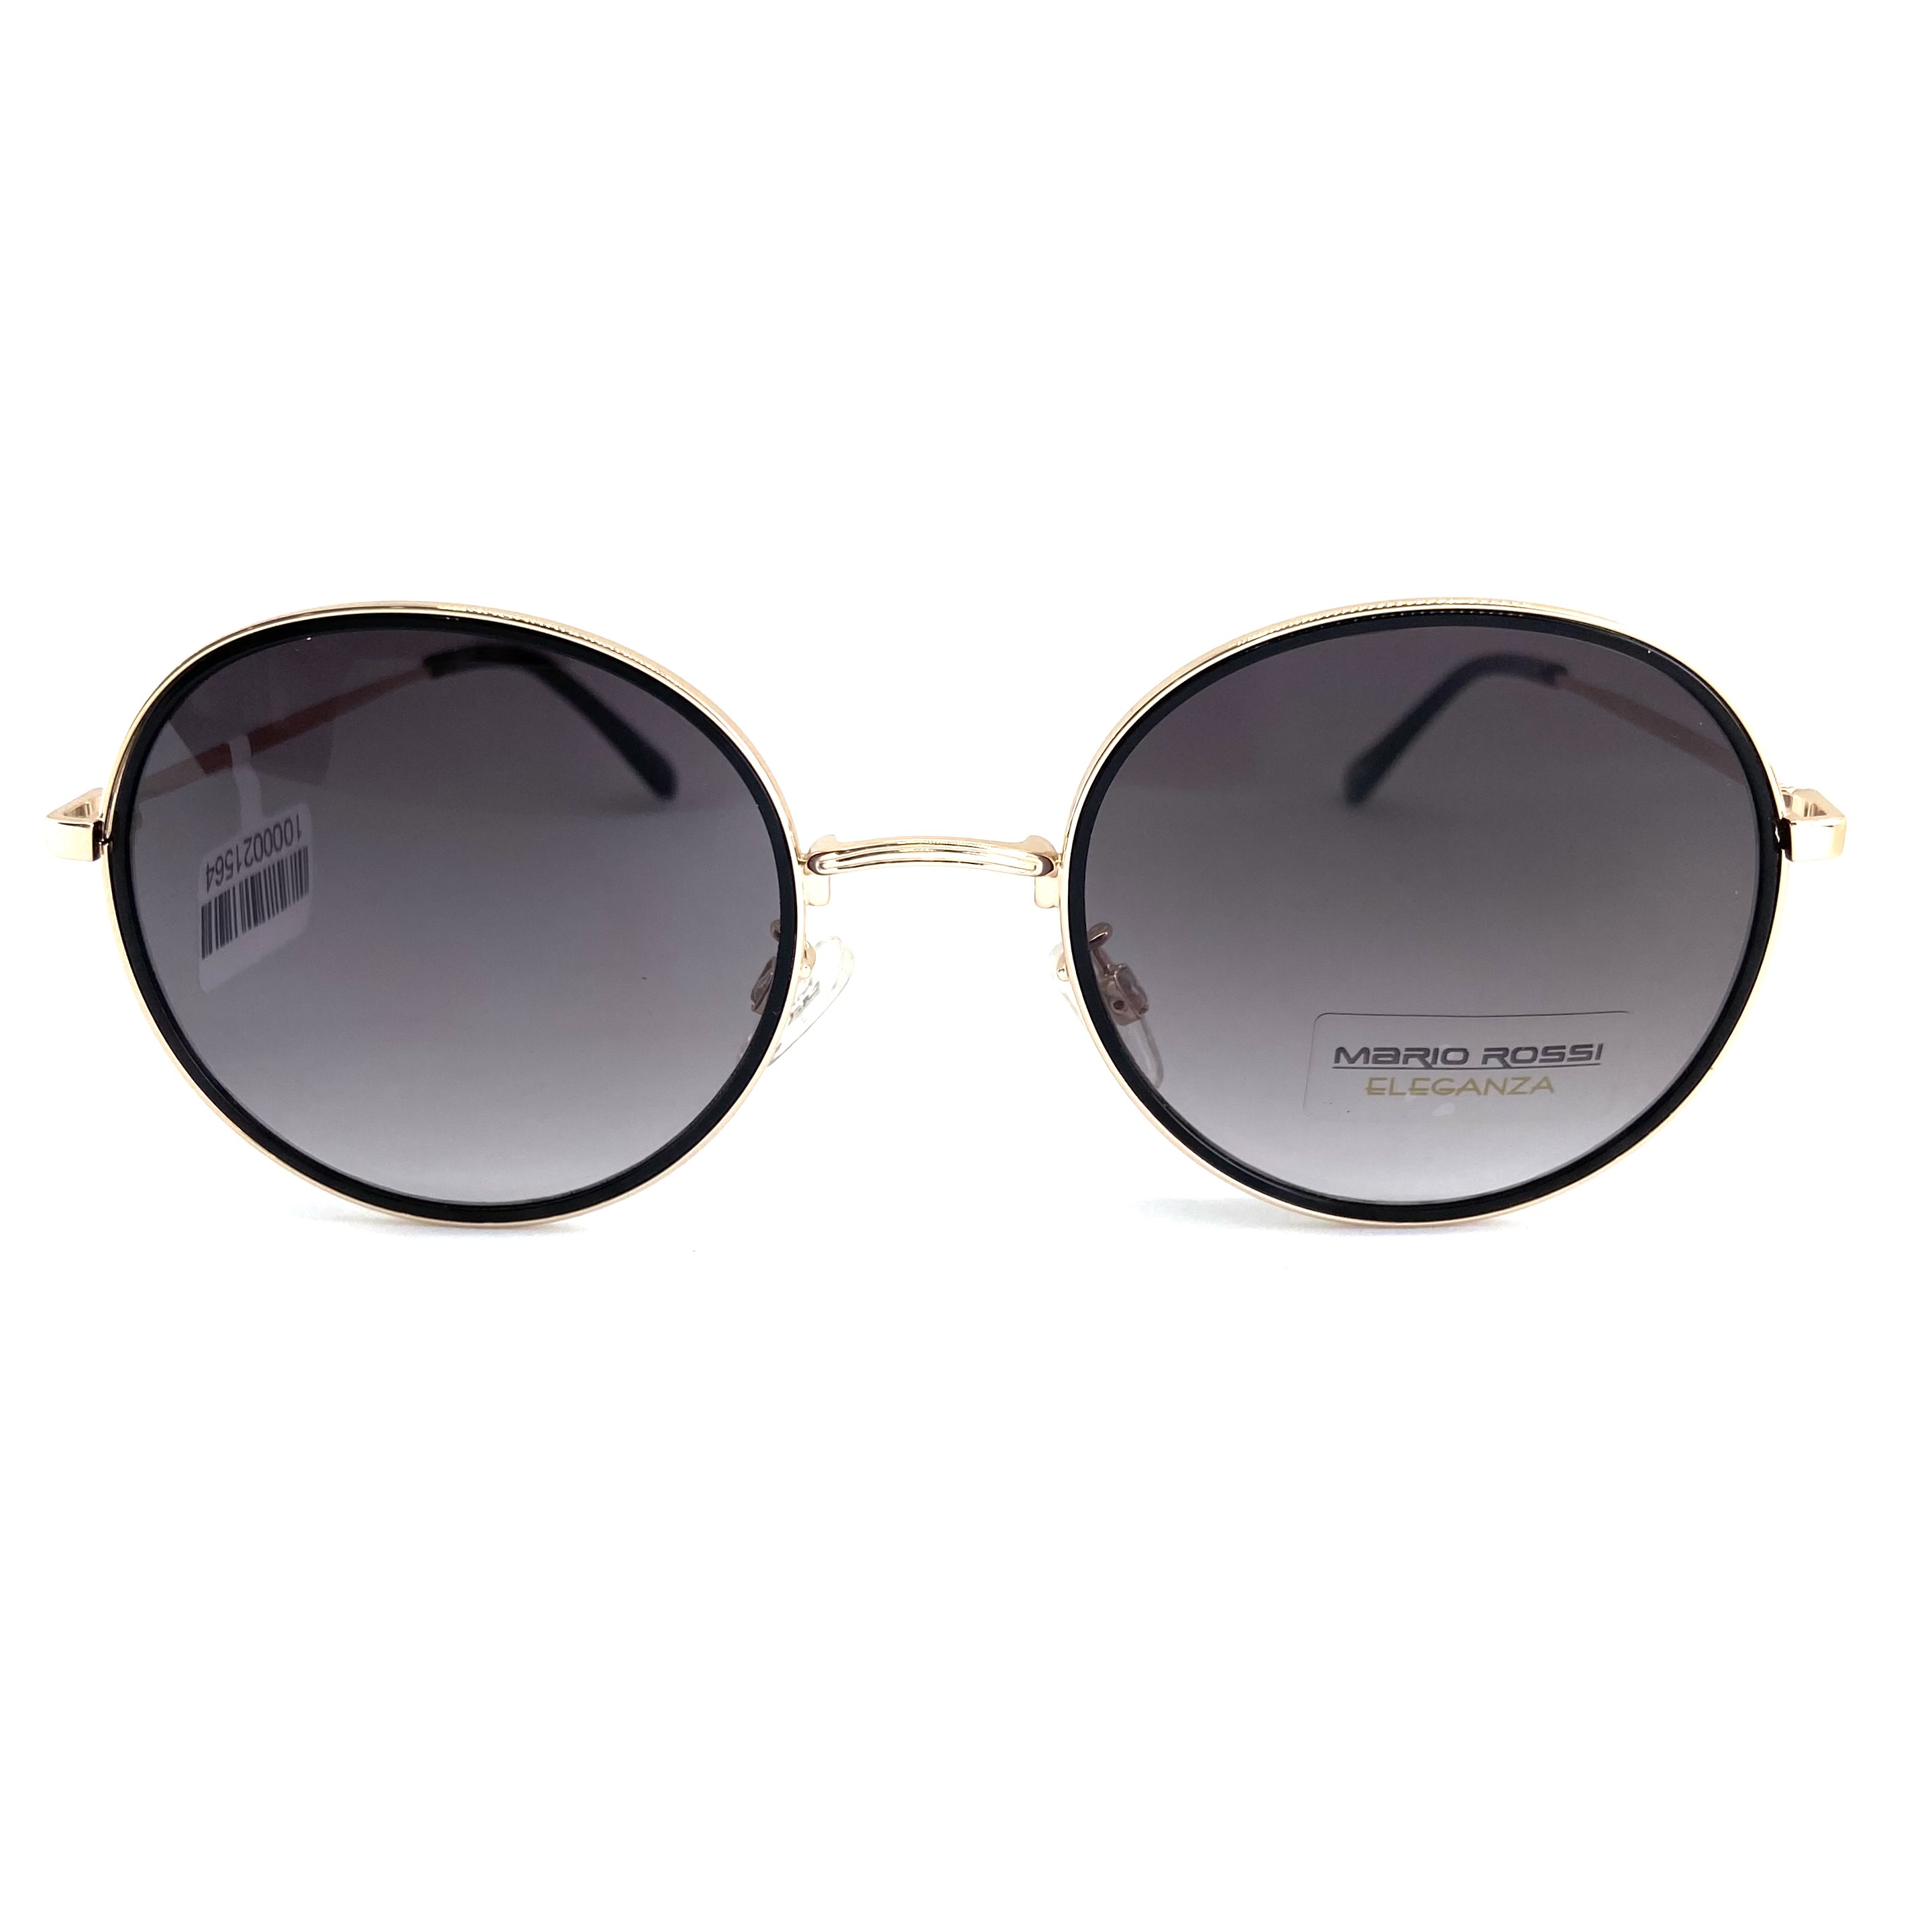 Солнцезащитные очки Mario Rossi модель 01 468                            -65%